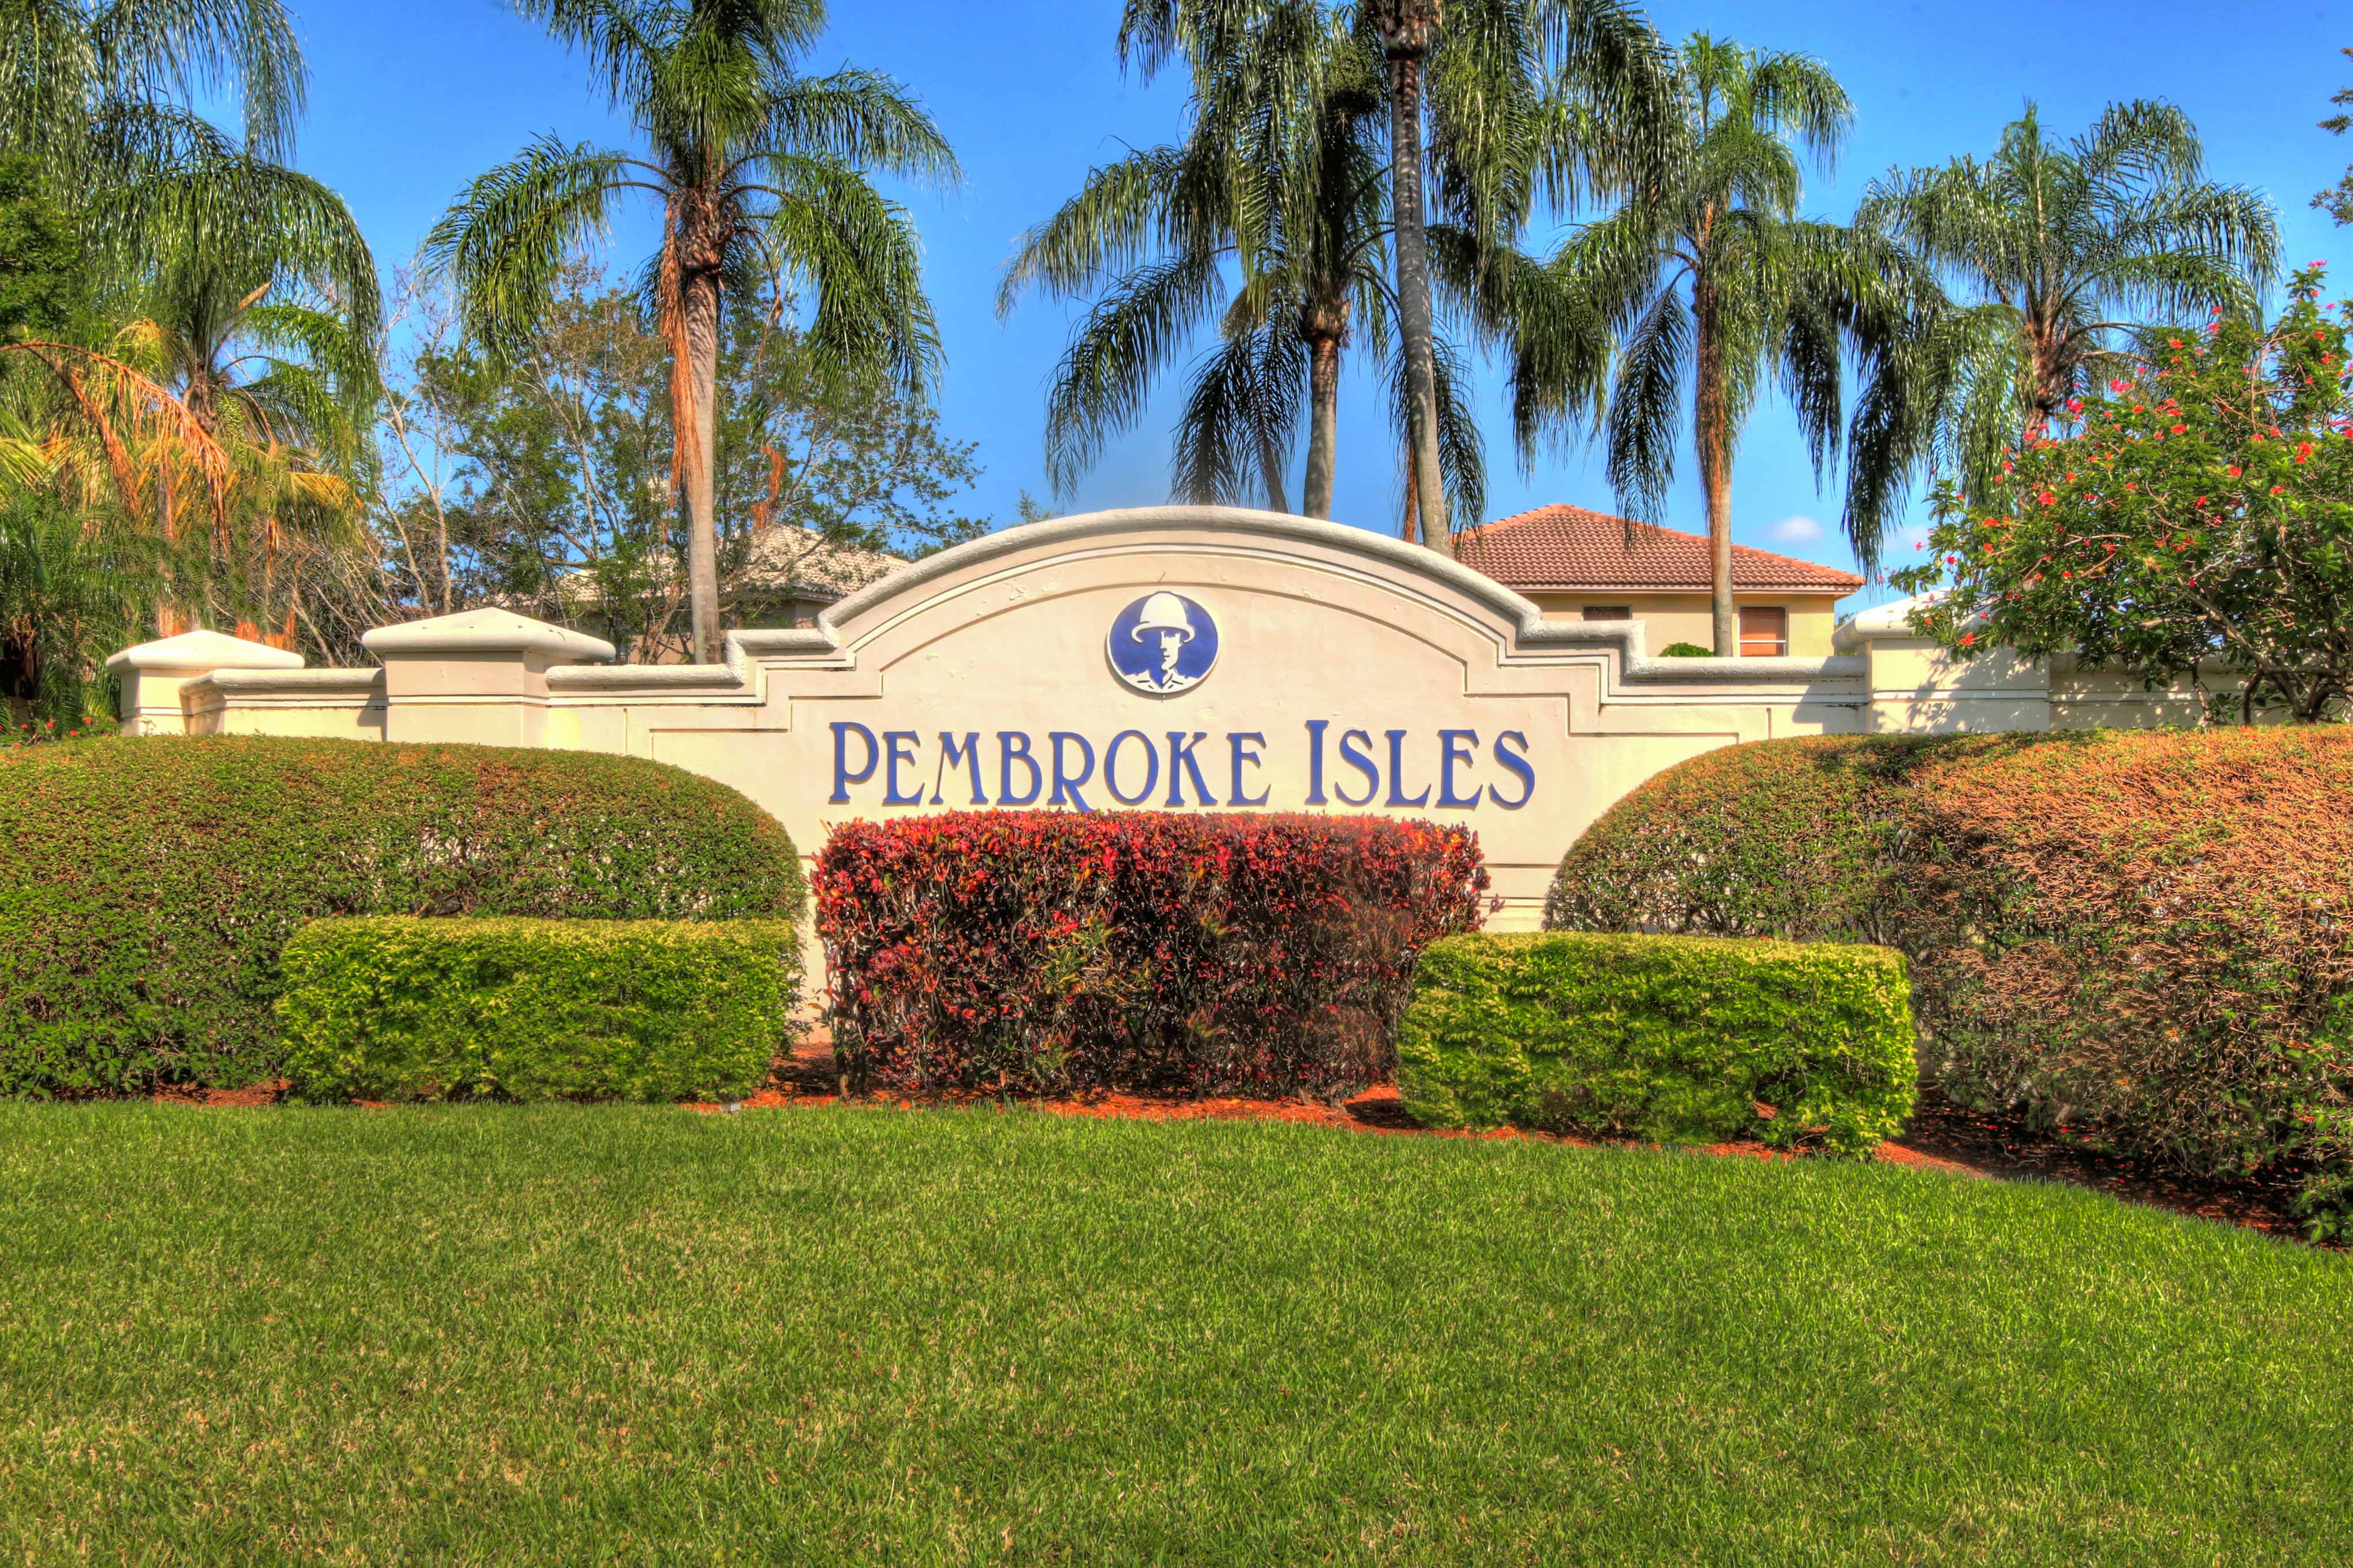 Pembroke Isles – Pembroke Pines Real Estate